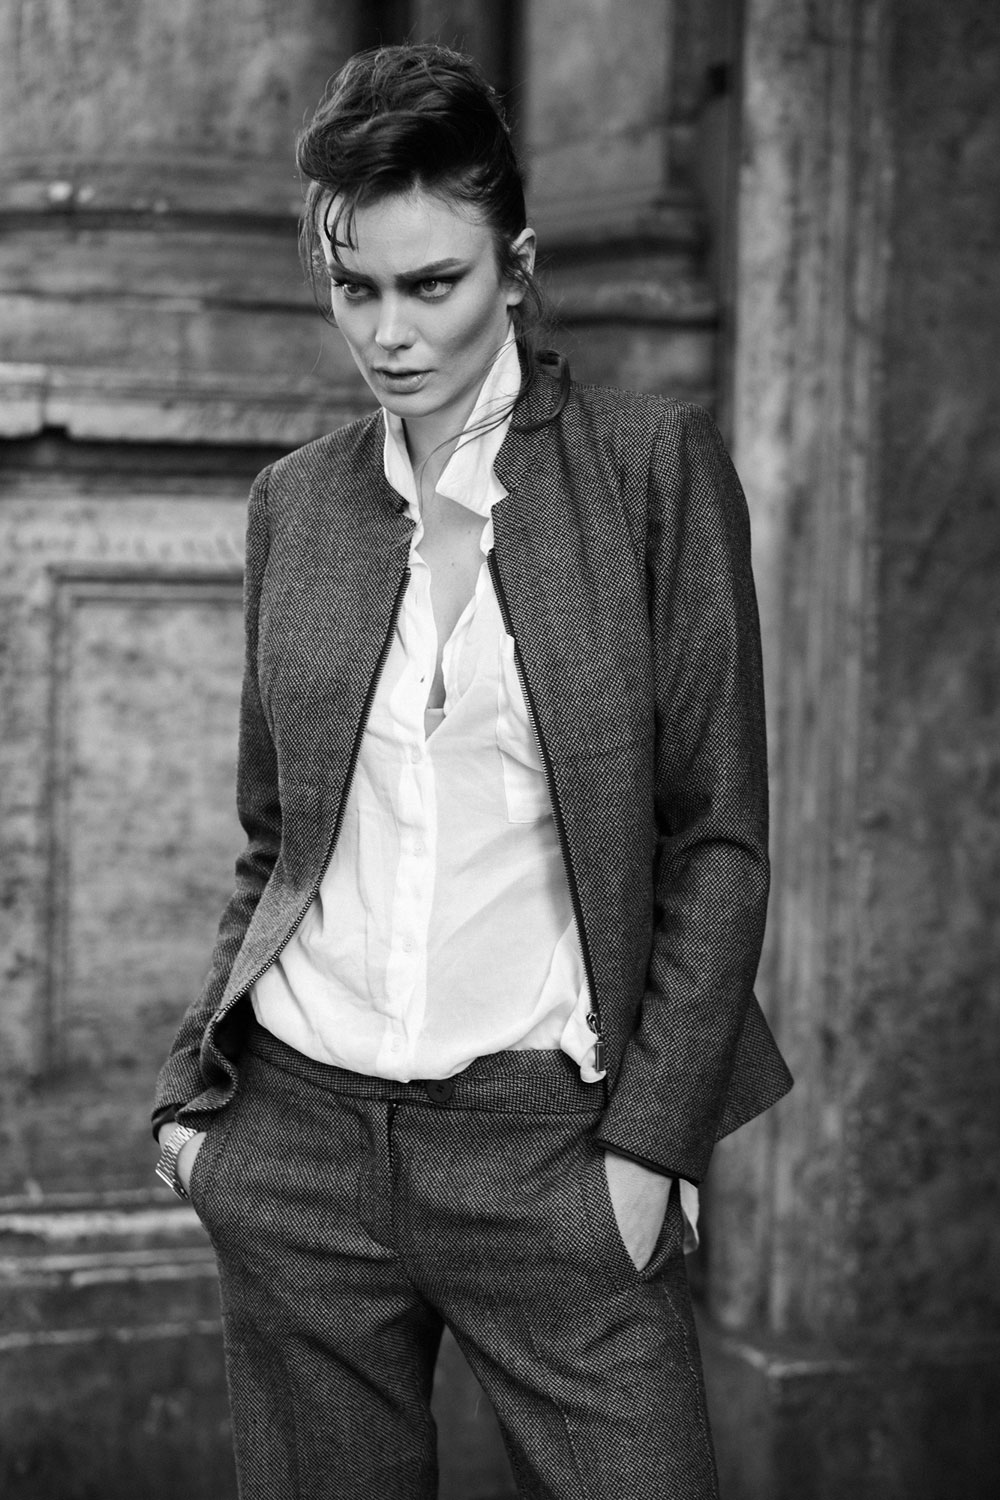 חליפה, לורד קיטש; חולצה, me.she; שעון, אוסף אישי (צילום: רונן פדידה)